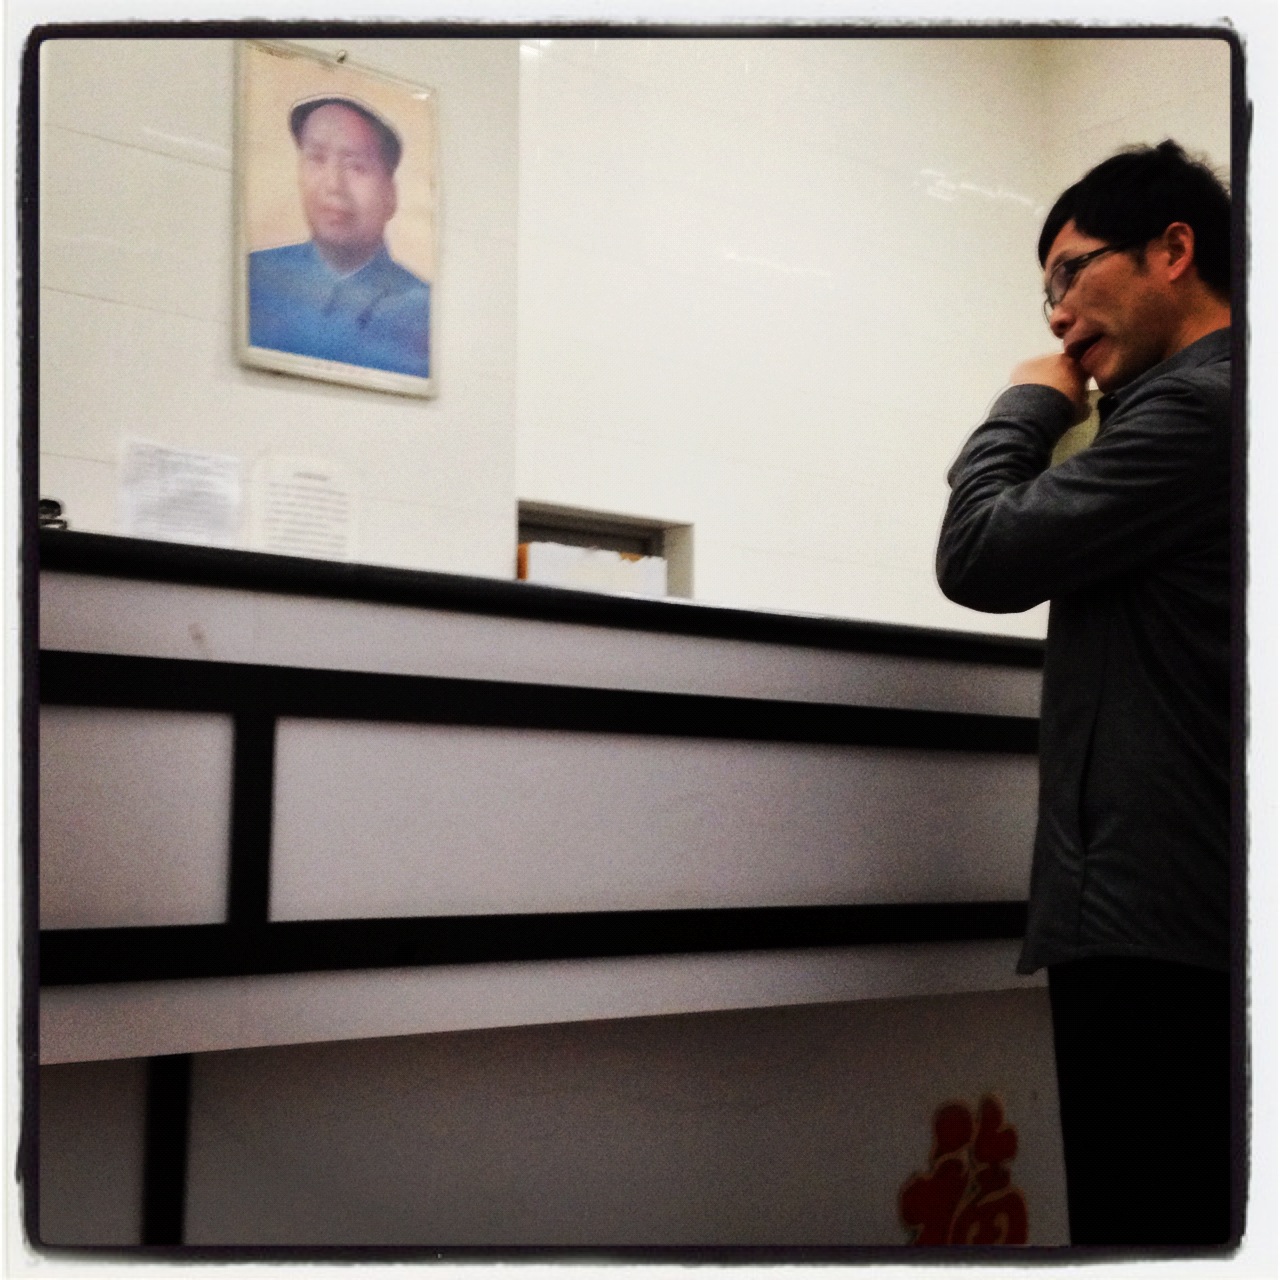 Mao works the photocopy room